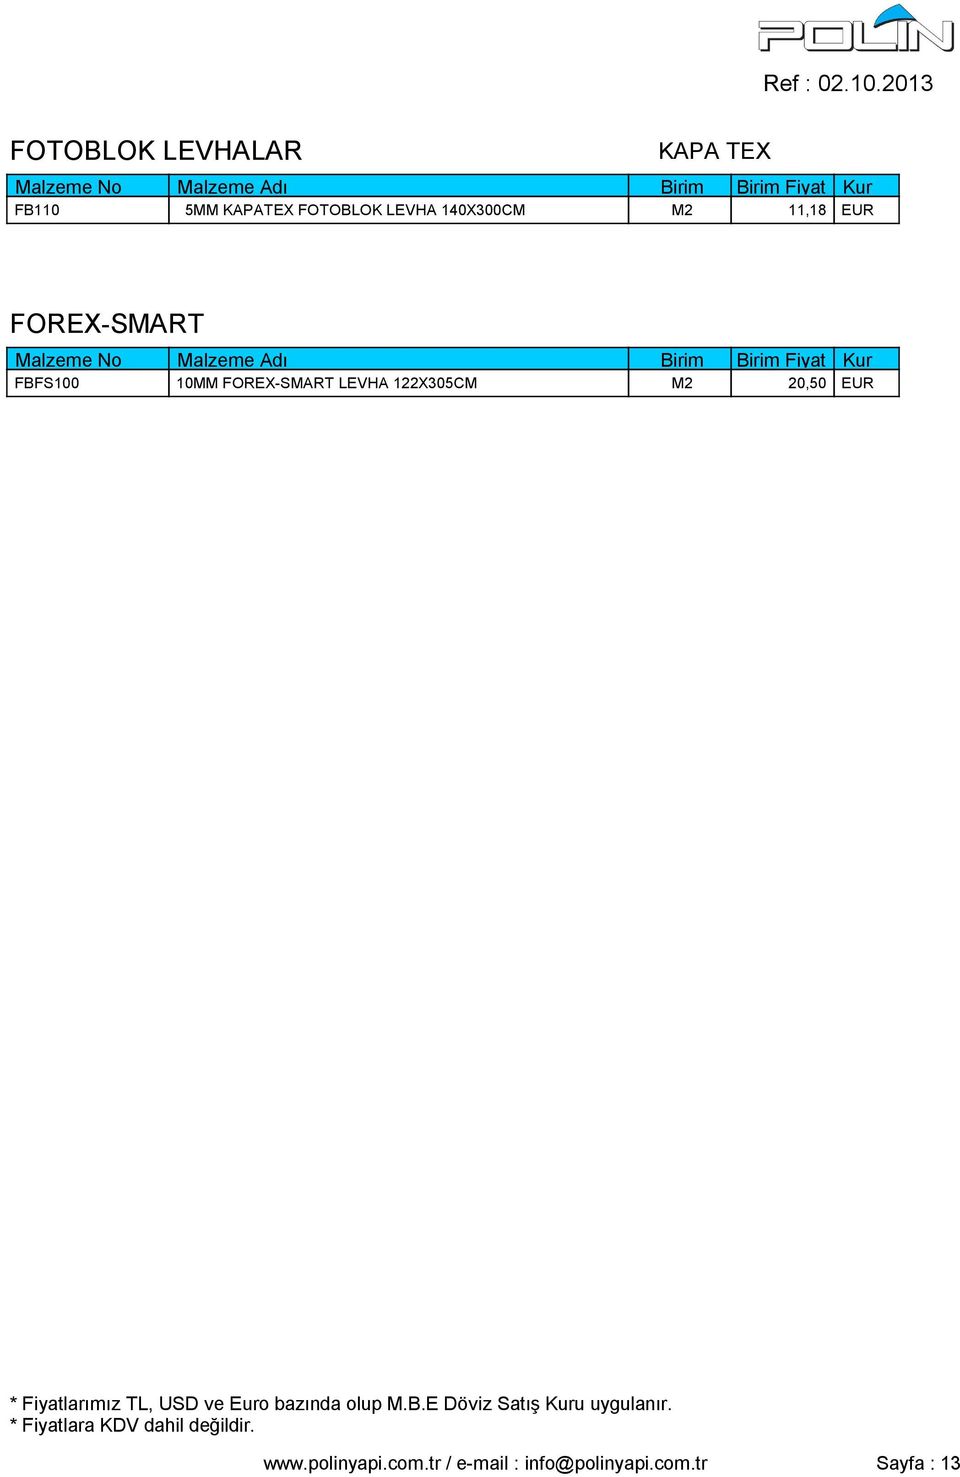 FOREX-SMART LEVHA 122X305CM M2 20,50 EUR www.